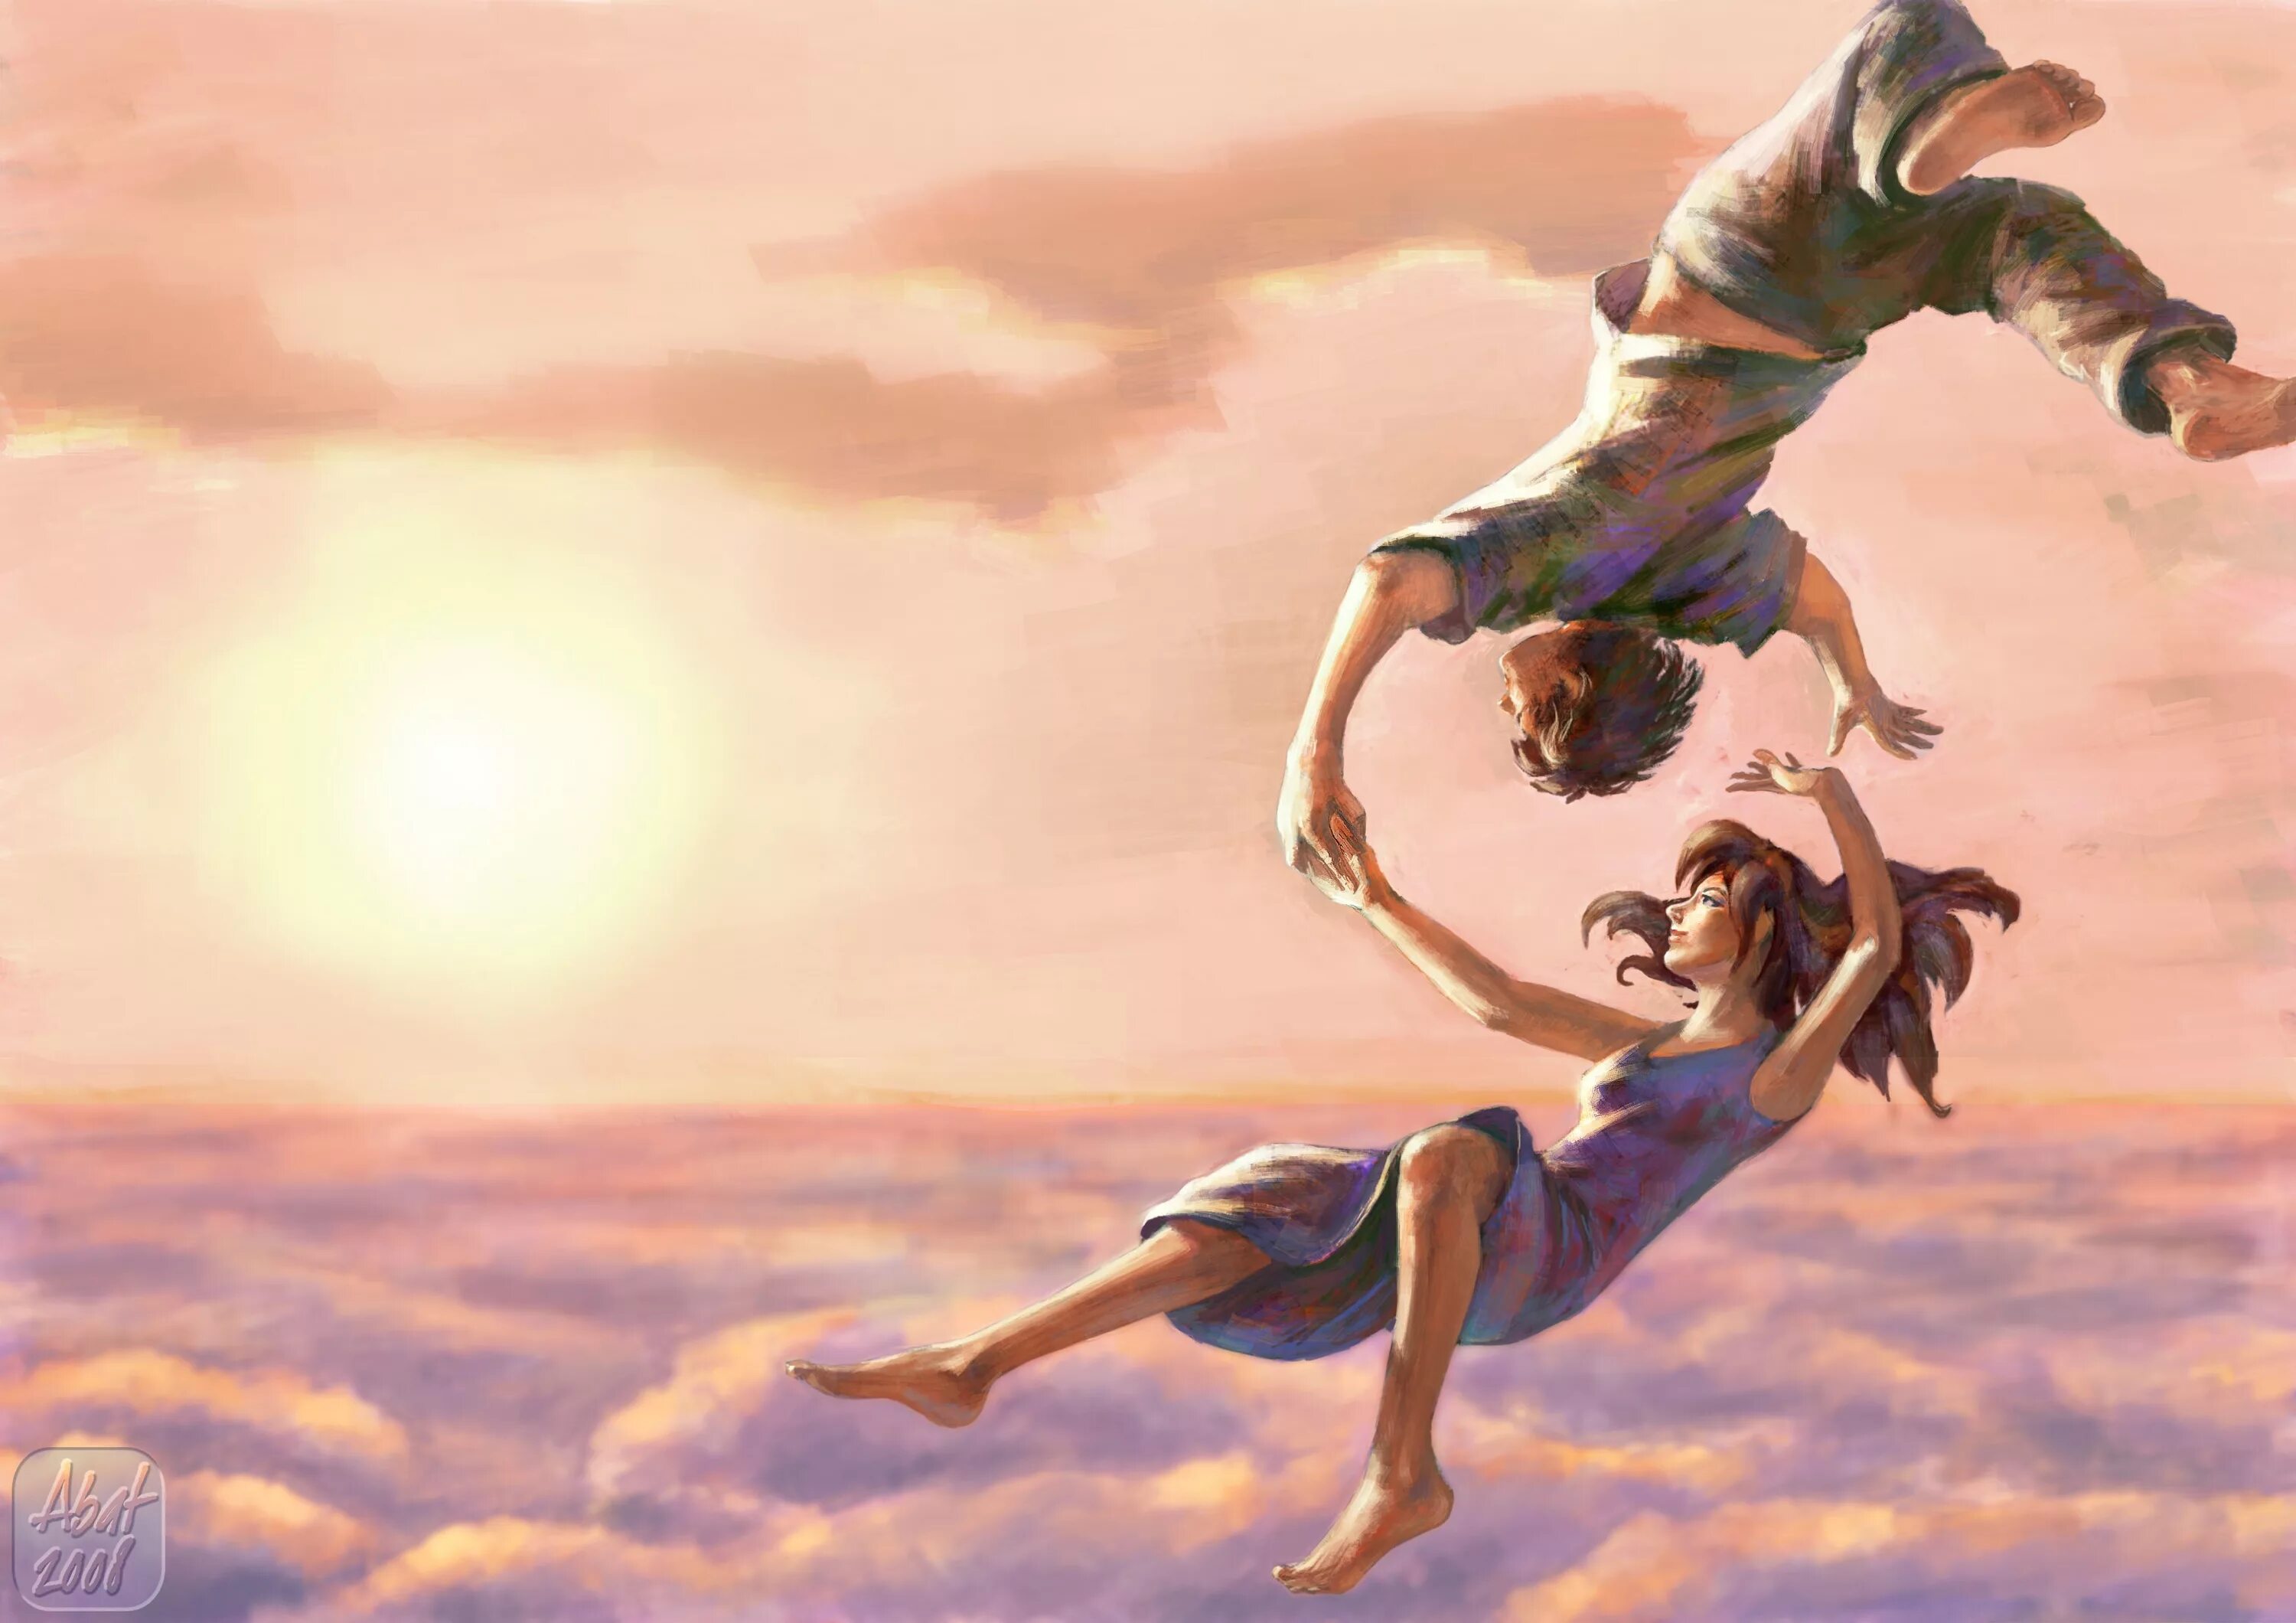 Эйфория любви. Девушка в прыжке. Картина счастье. Красивые иллюстрации. Полет души.